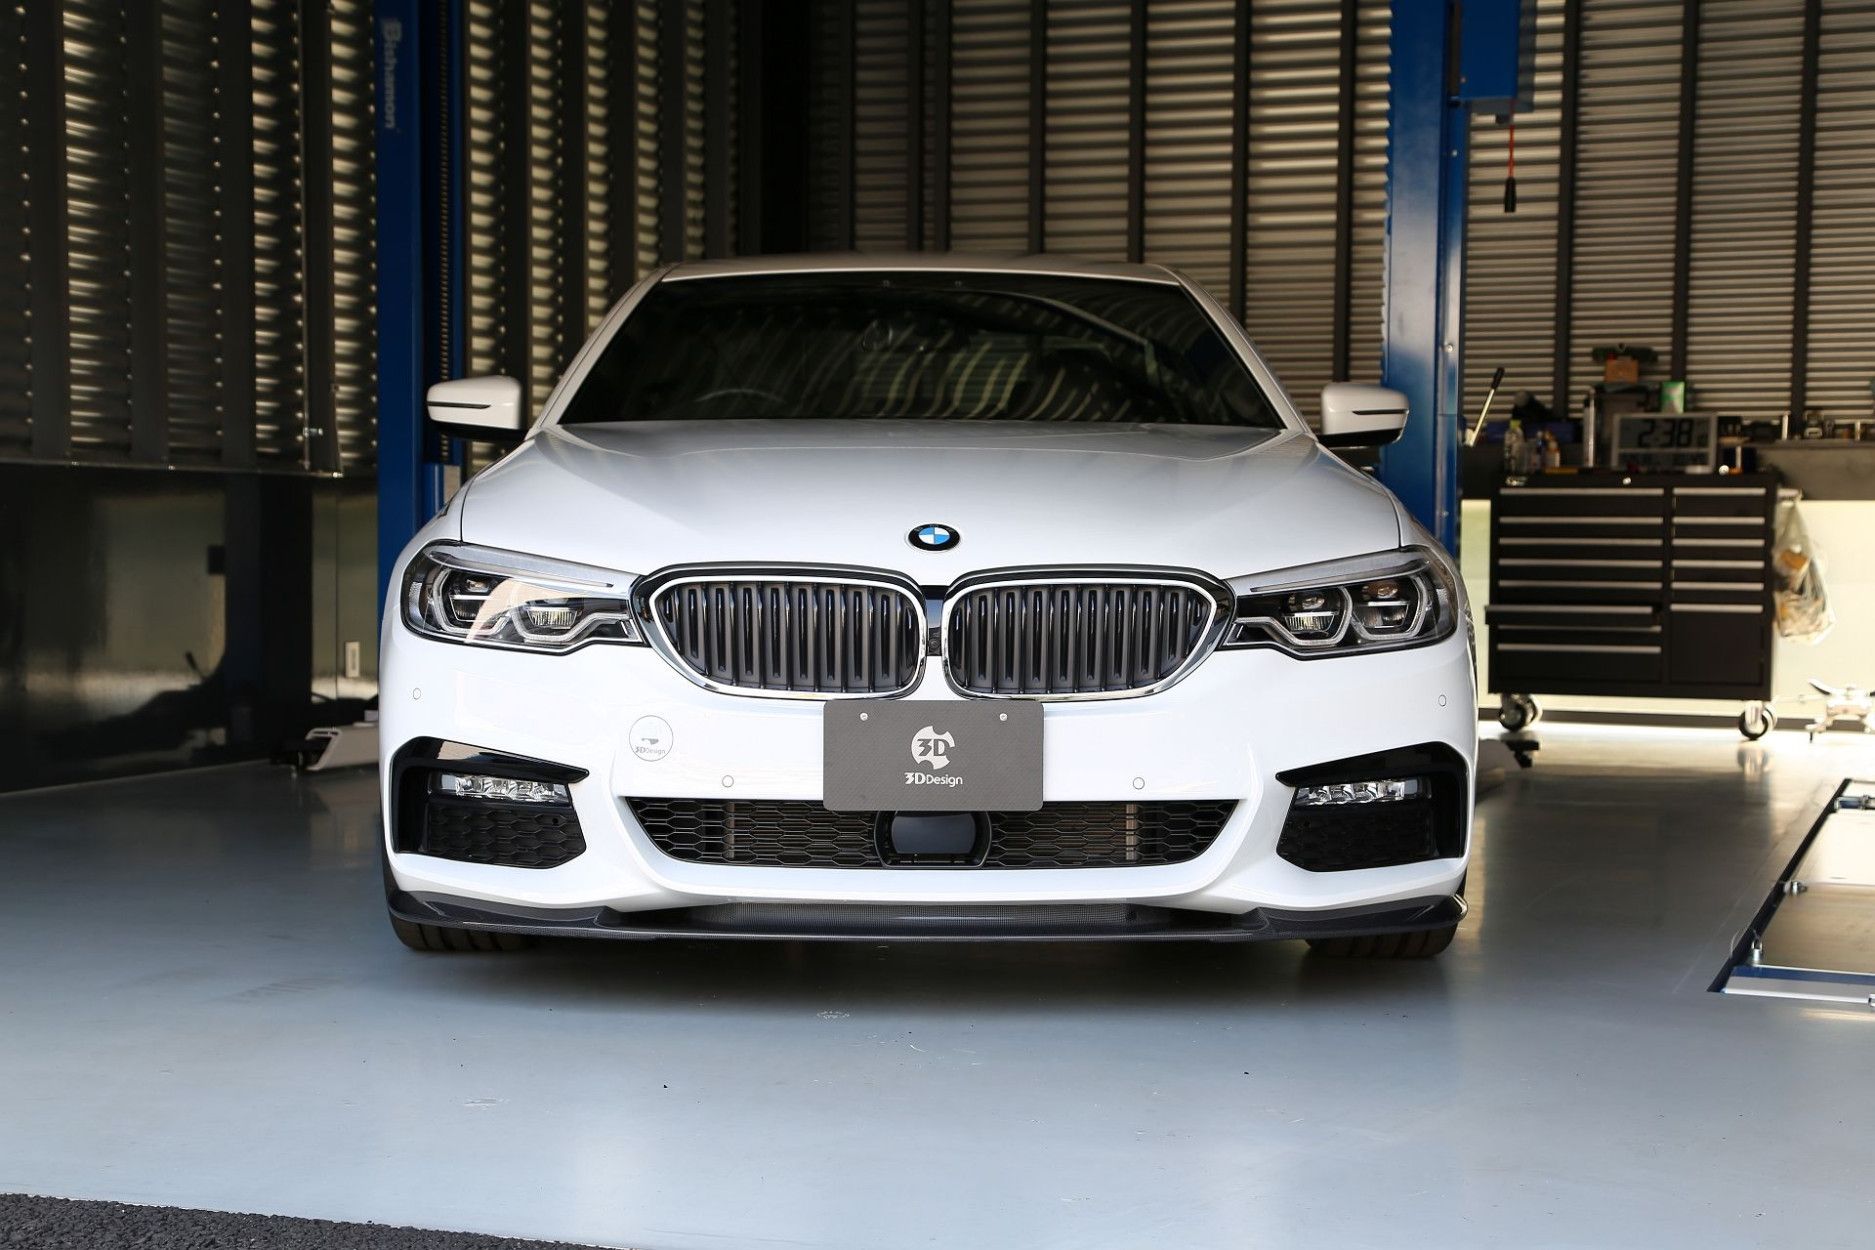 3DDesign Carbon/PUR Frontsplitter passend für BMW 5er E60 mit M-Paket -  online kaufen bei CFD